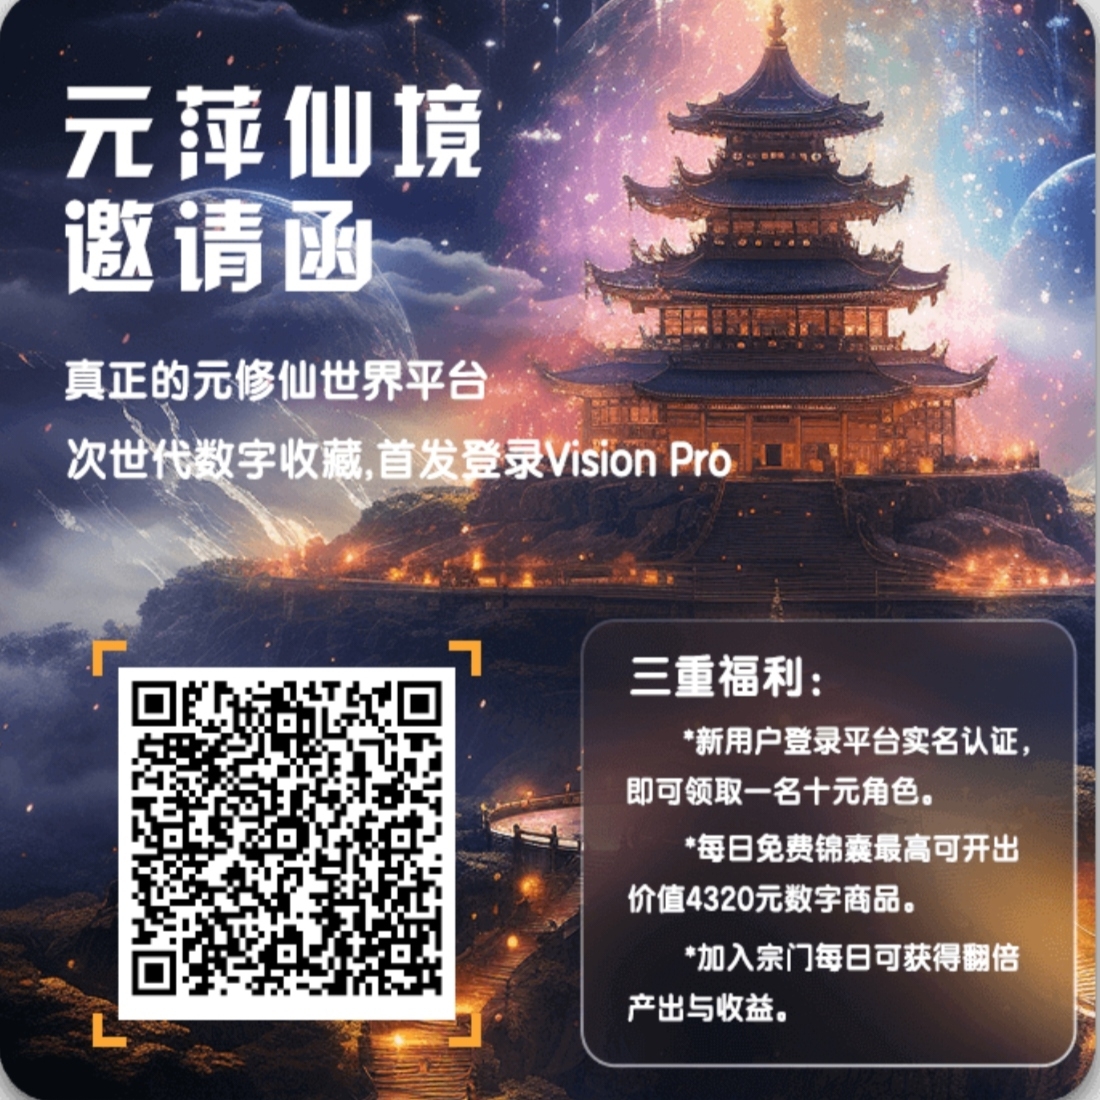 米萍仙境YYDS 开启躺平人生 - 315首码项目网-315首码项目网